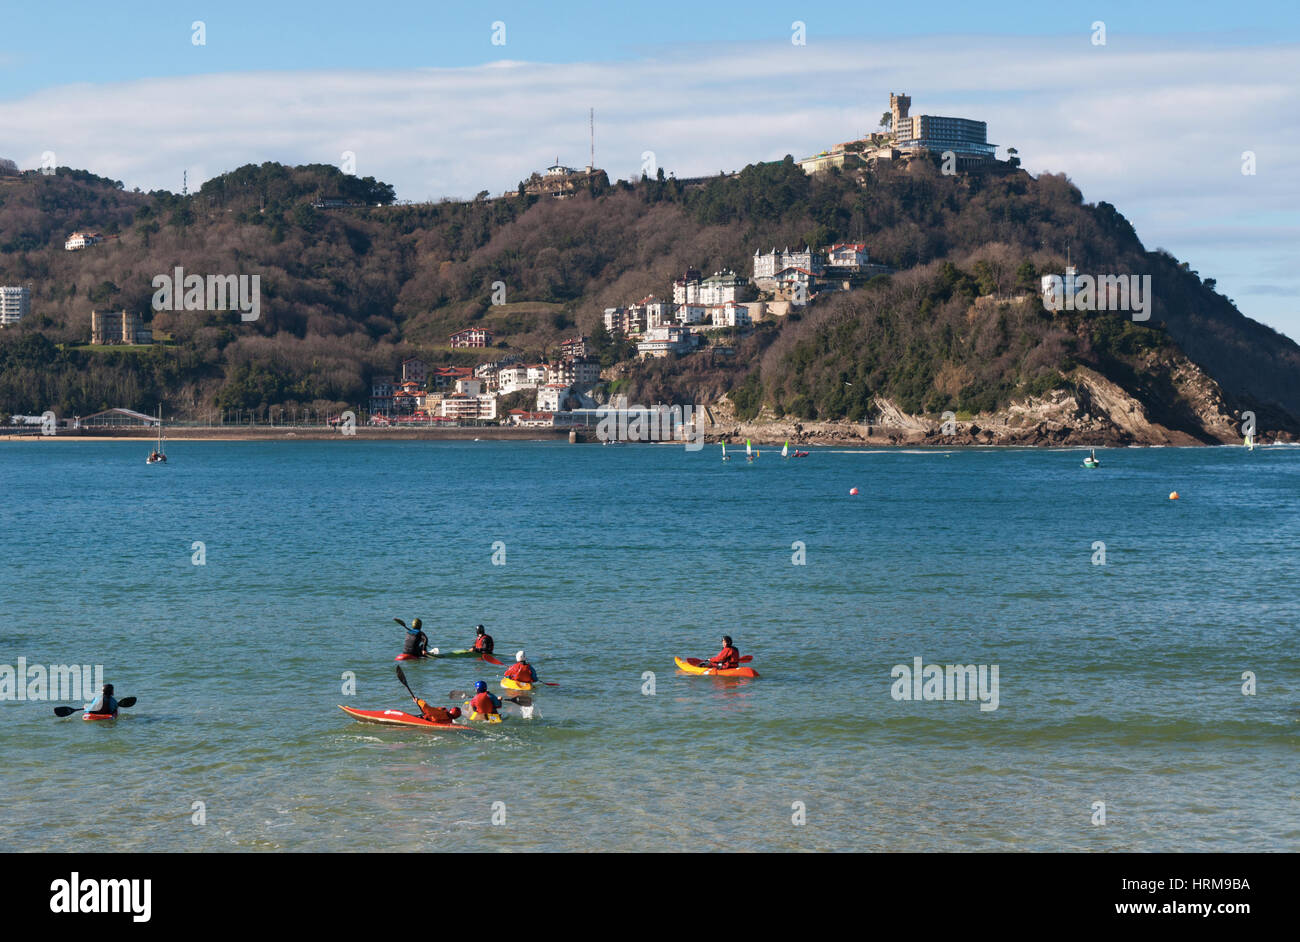 País Vasco: la famosa playa de La Concha visto desde el embarcadero en Donostia San Sebastián, la ciudad costera de la bahía de Vizcaya Foto de stock